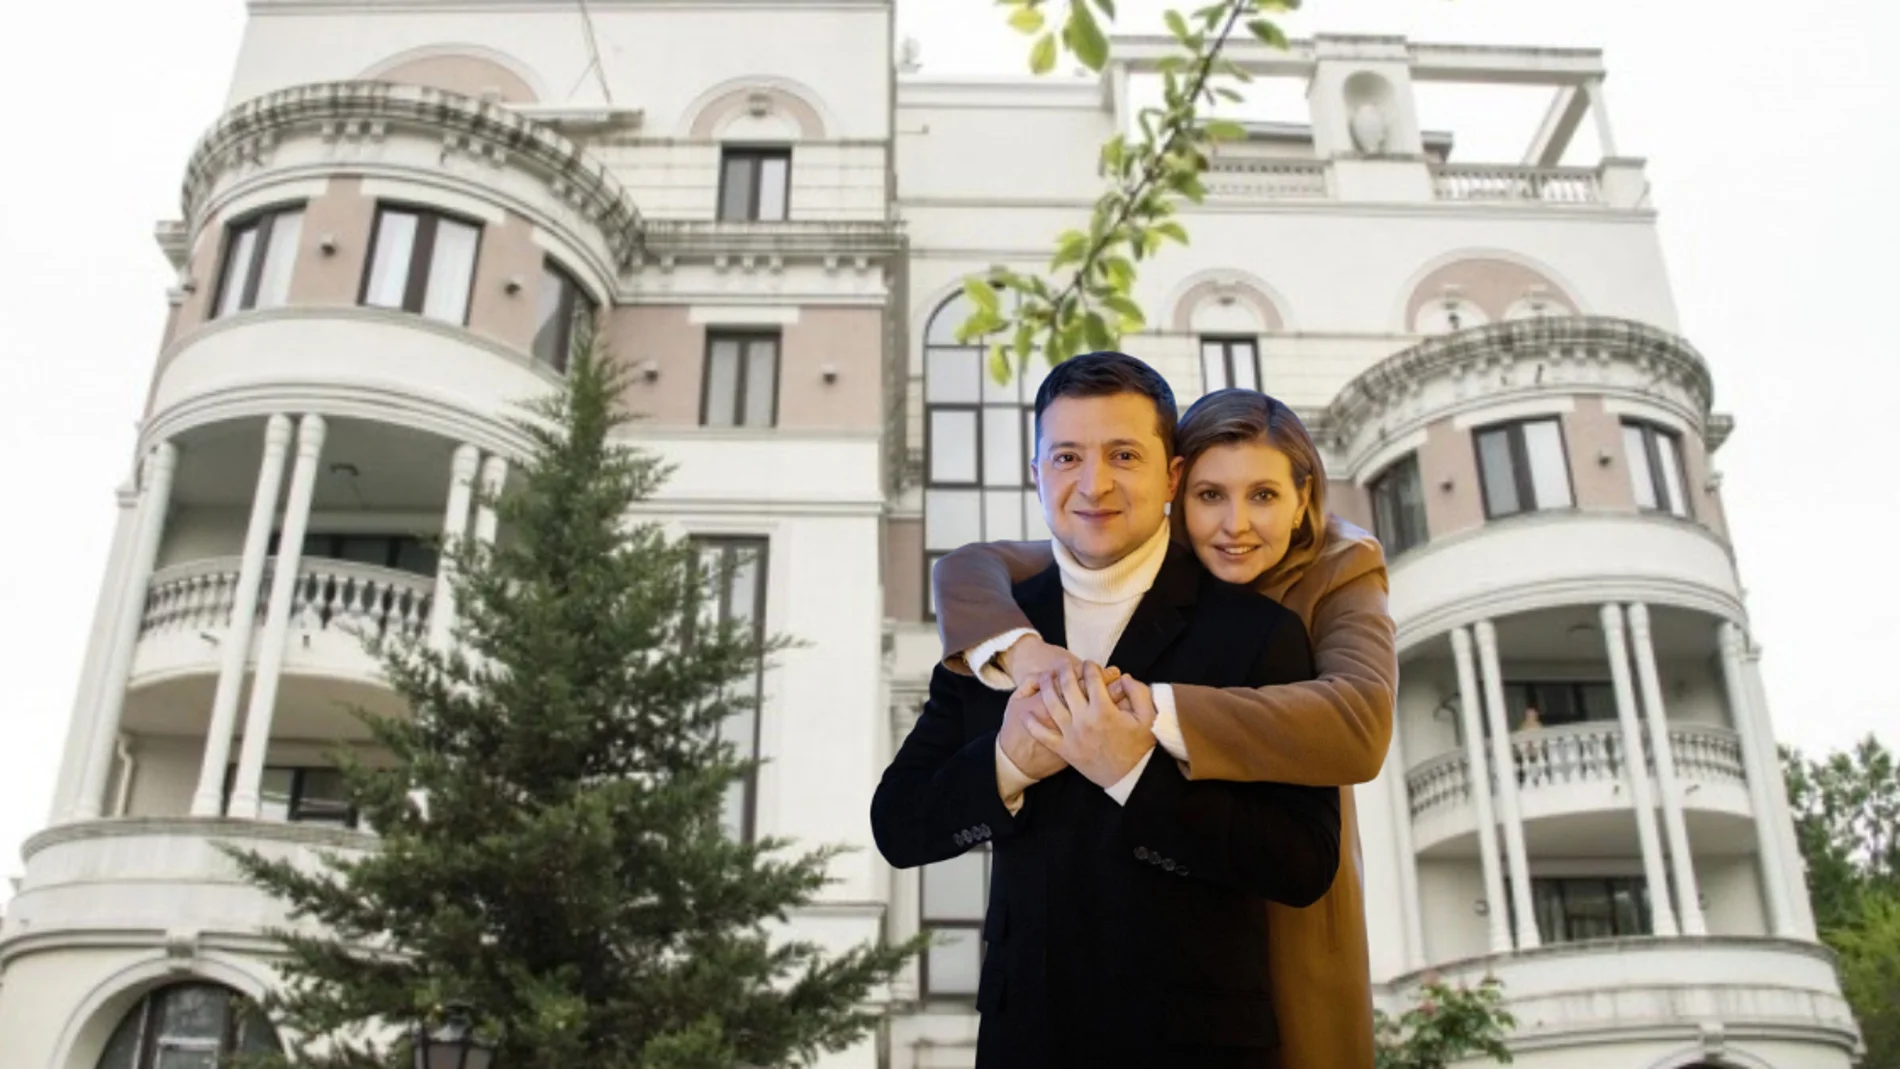 El matrimonio Zelenski y, de fondo, el edificio de Crimea en el que poseían un apartamento